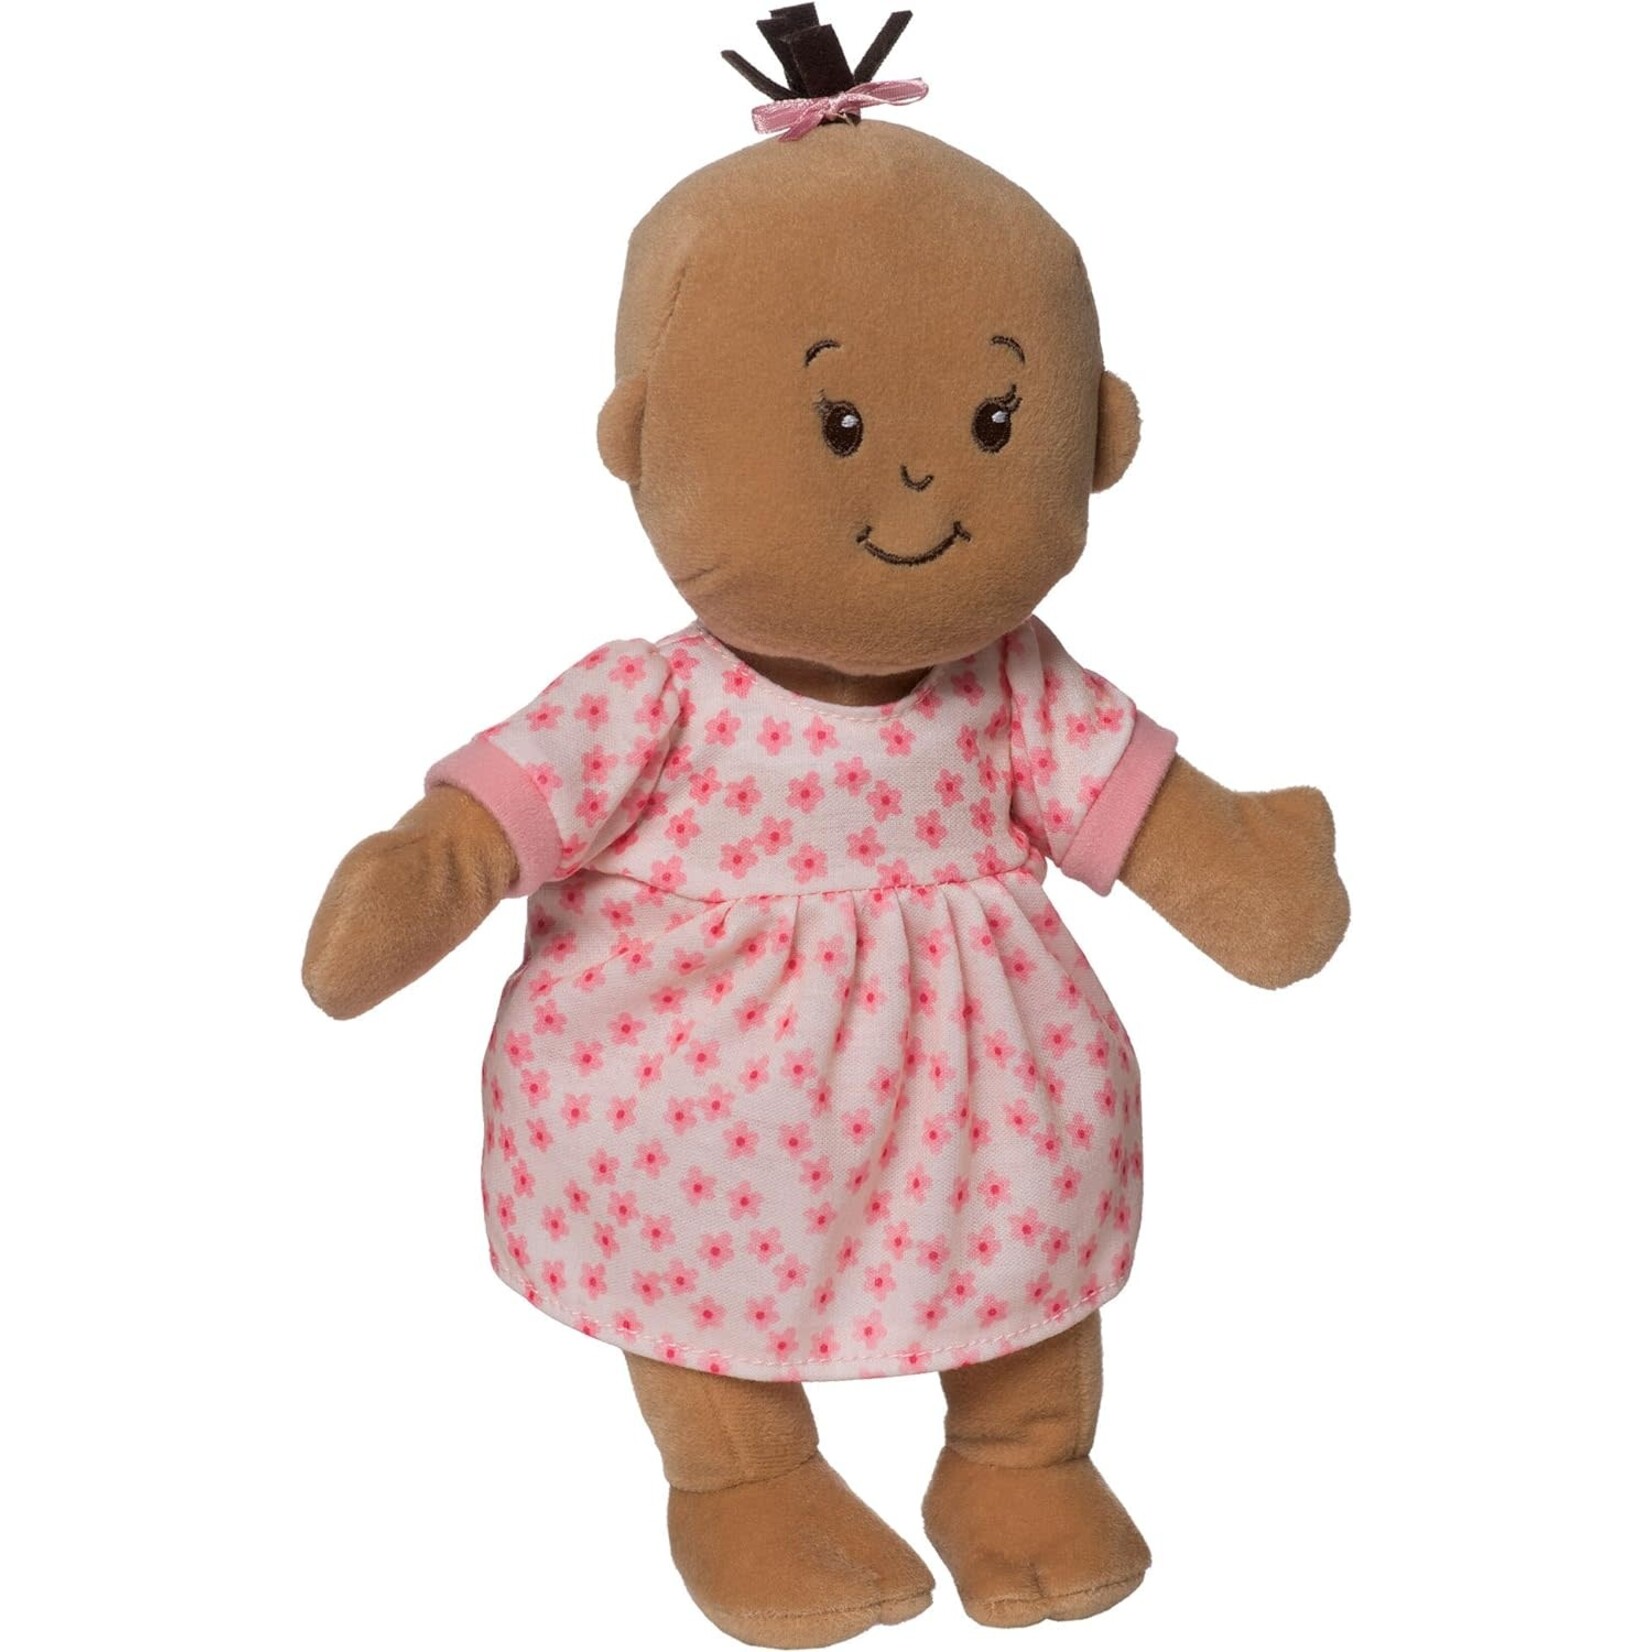 Manhattan Toy Wee Baby Stella Beige Doll with Brown Hair